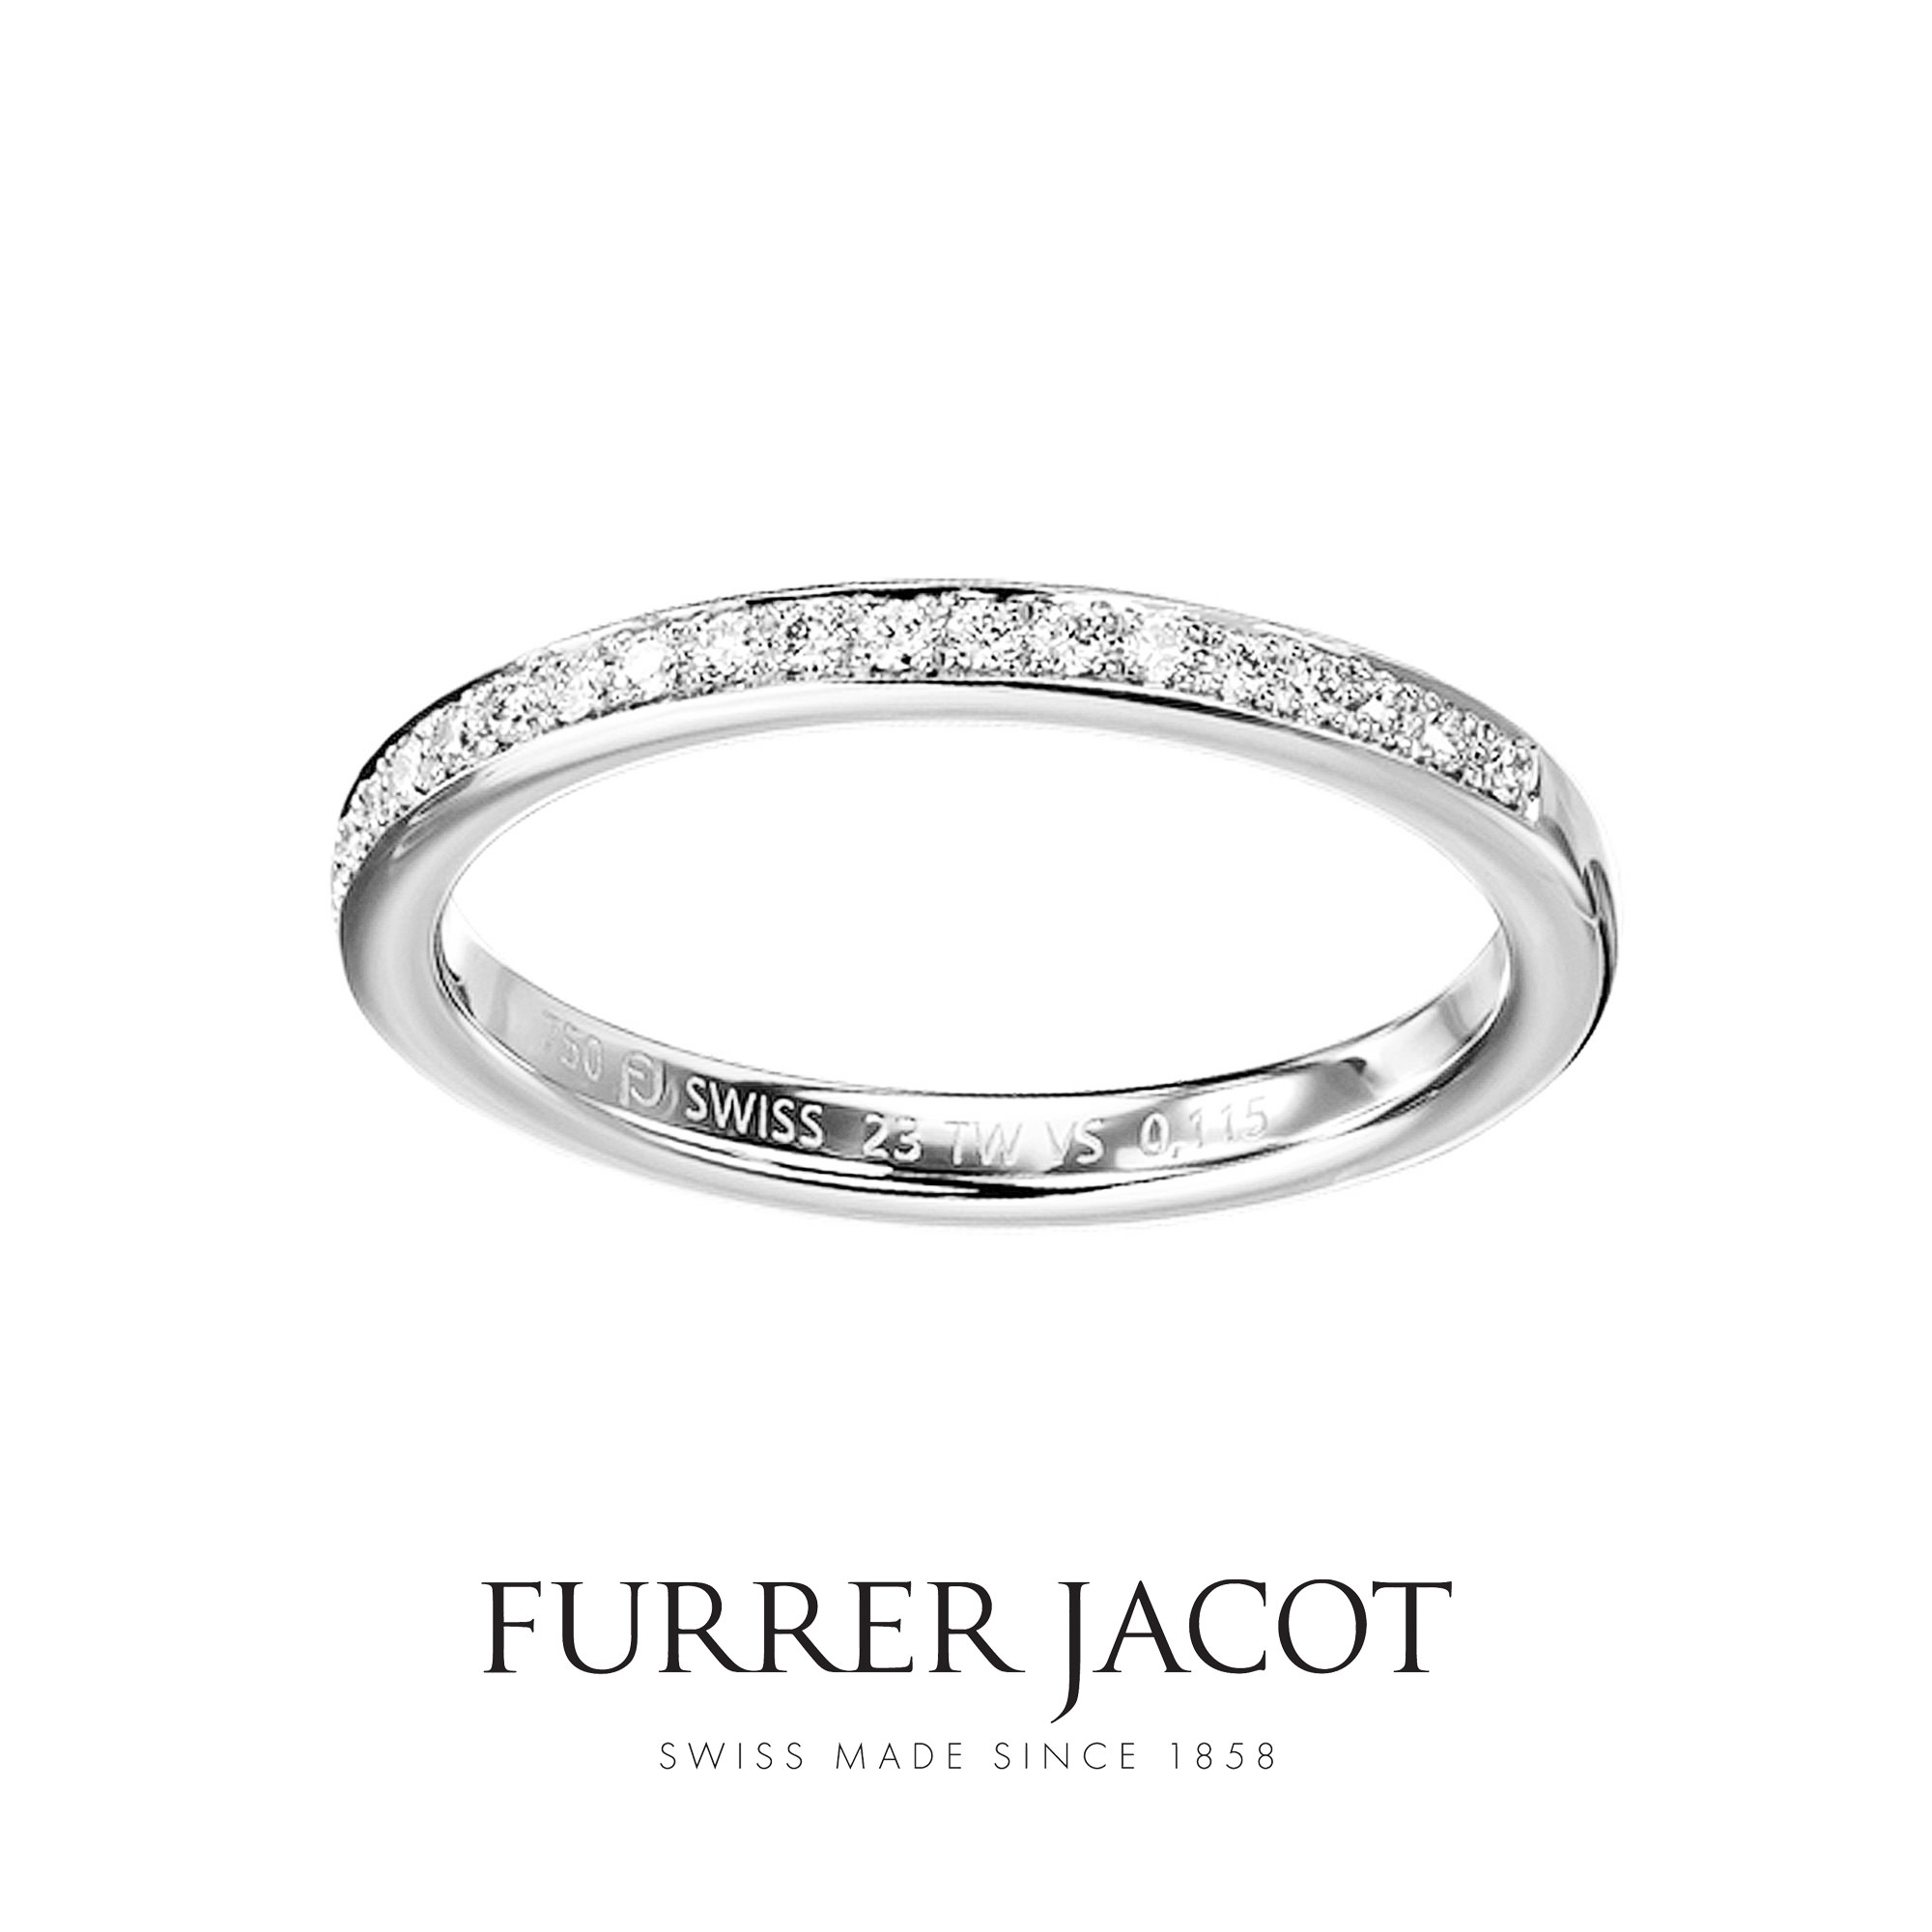 FURRERJACOTフラージャコ―の婚約指輪エンゲージリング兼結婚指輪マリッジリングのMEMOIREメモワール